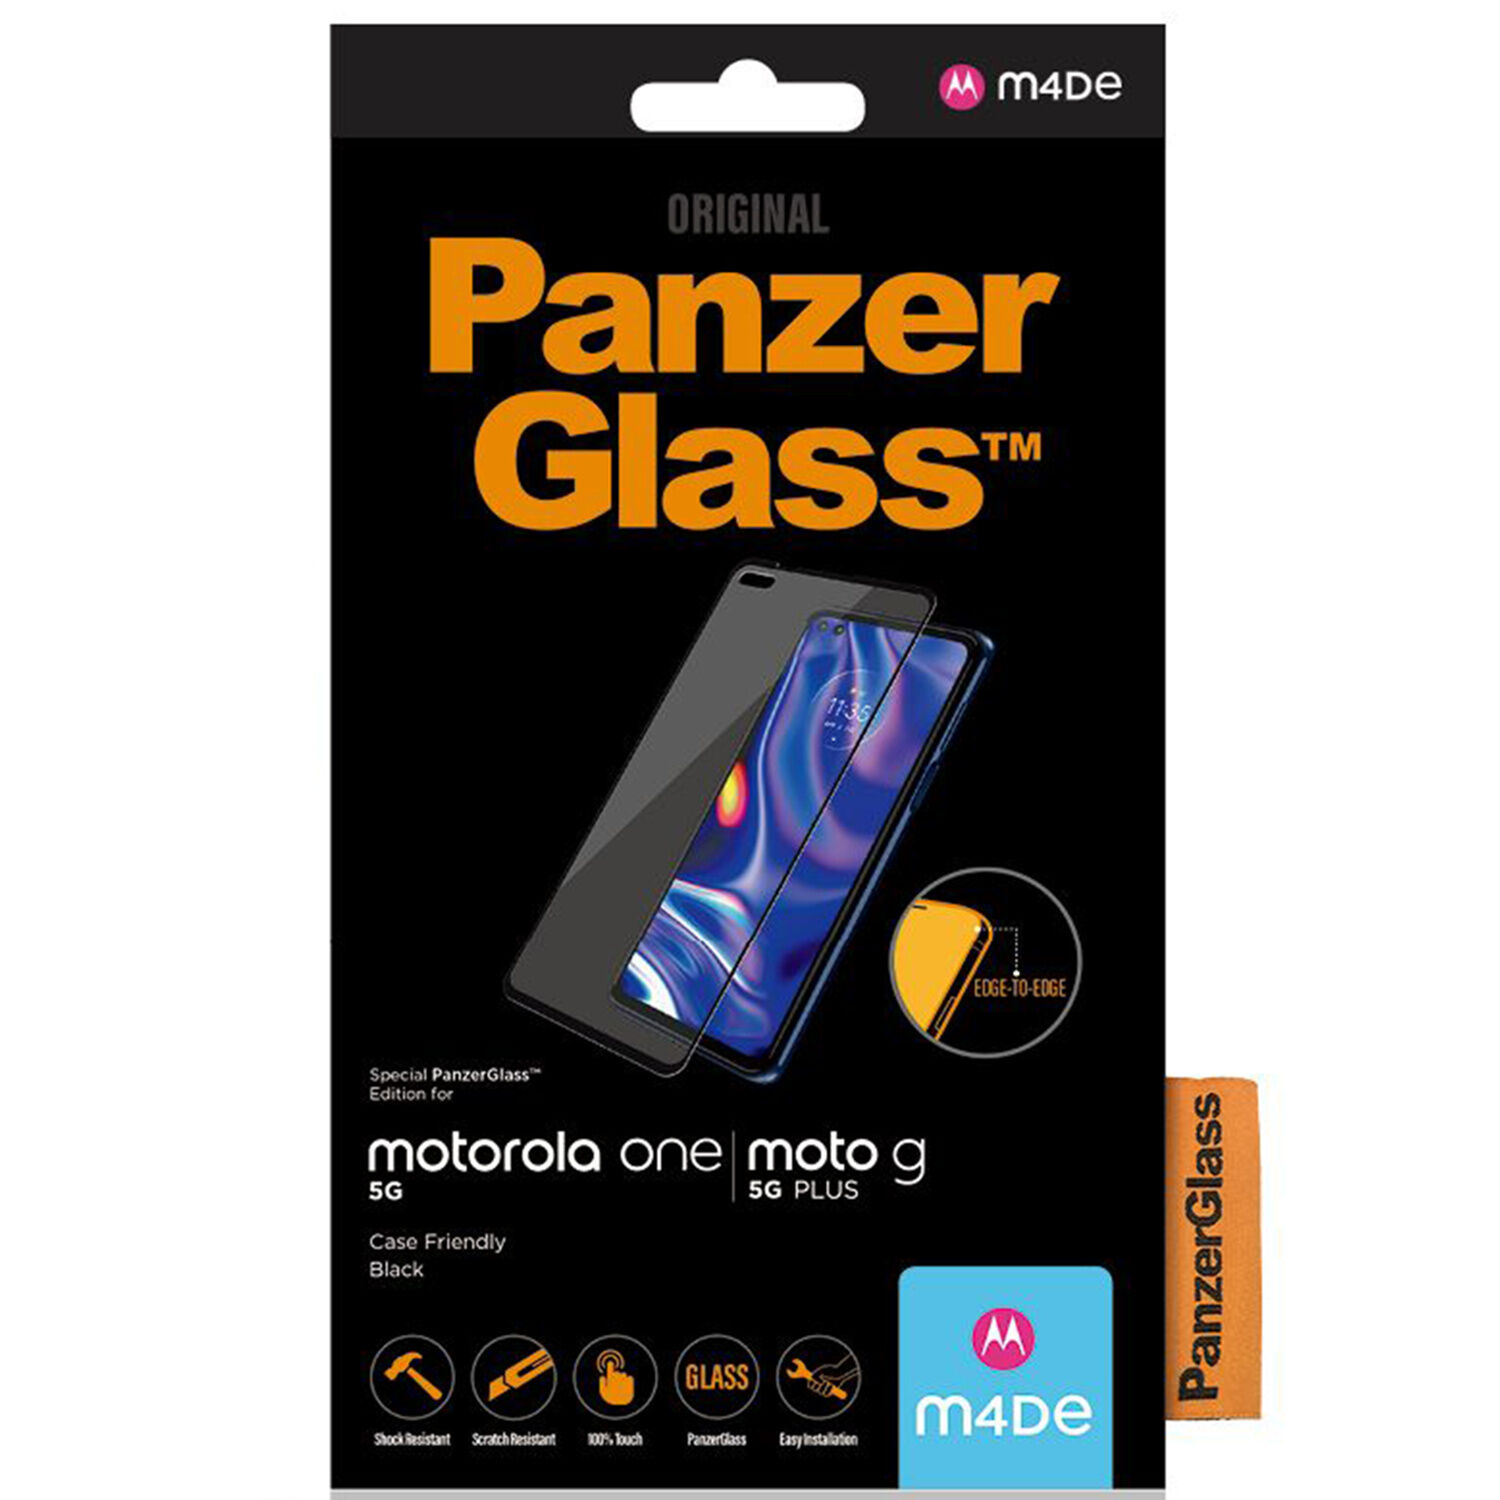 PanzerGlass Protection d'écran Case Friendly pour le Motorola Moto G 5G Plus